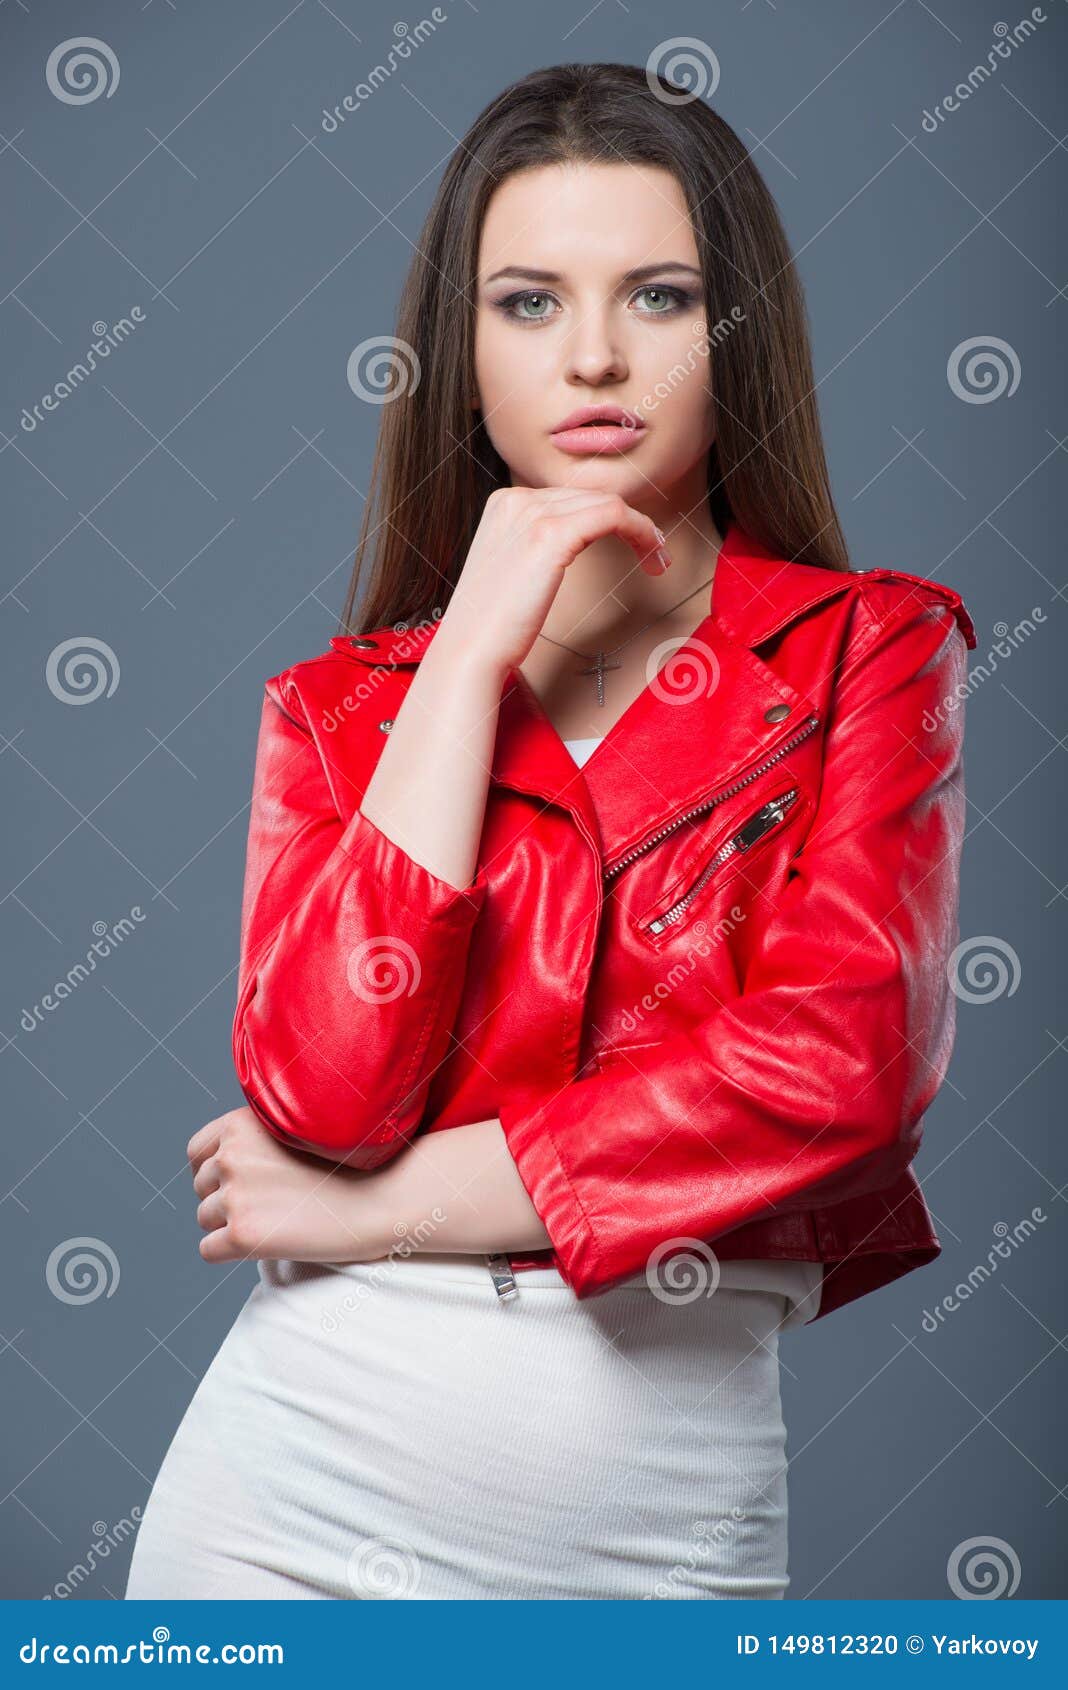 Estilo De Moda, Ropa De Mujer De Moda, Combinación De Hermosa Morena Con Vestido Blanco Chaqueta De Cuero Rojo Foto de archivo - Imagen de chaqueta, encantador: 149812320